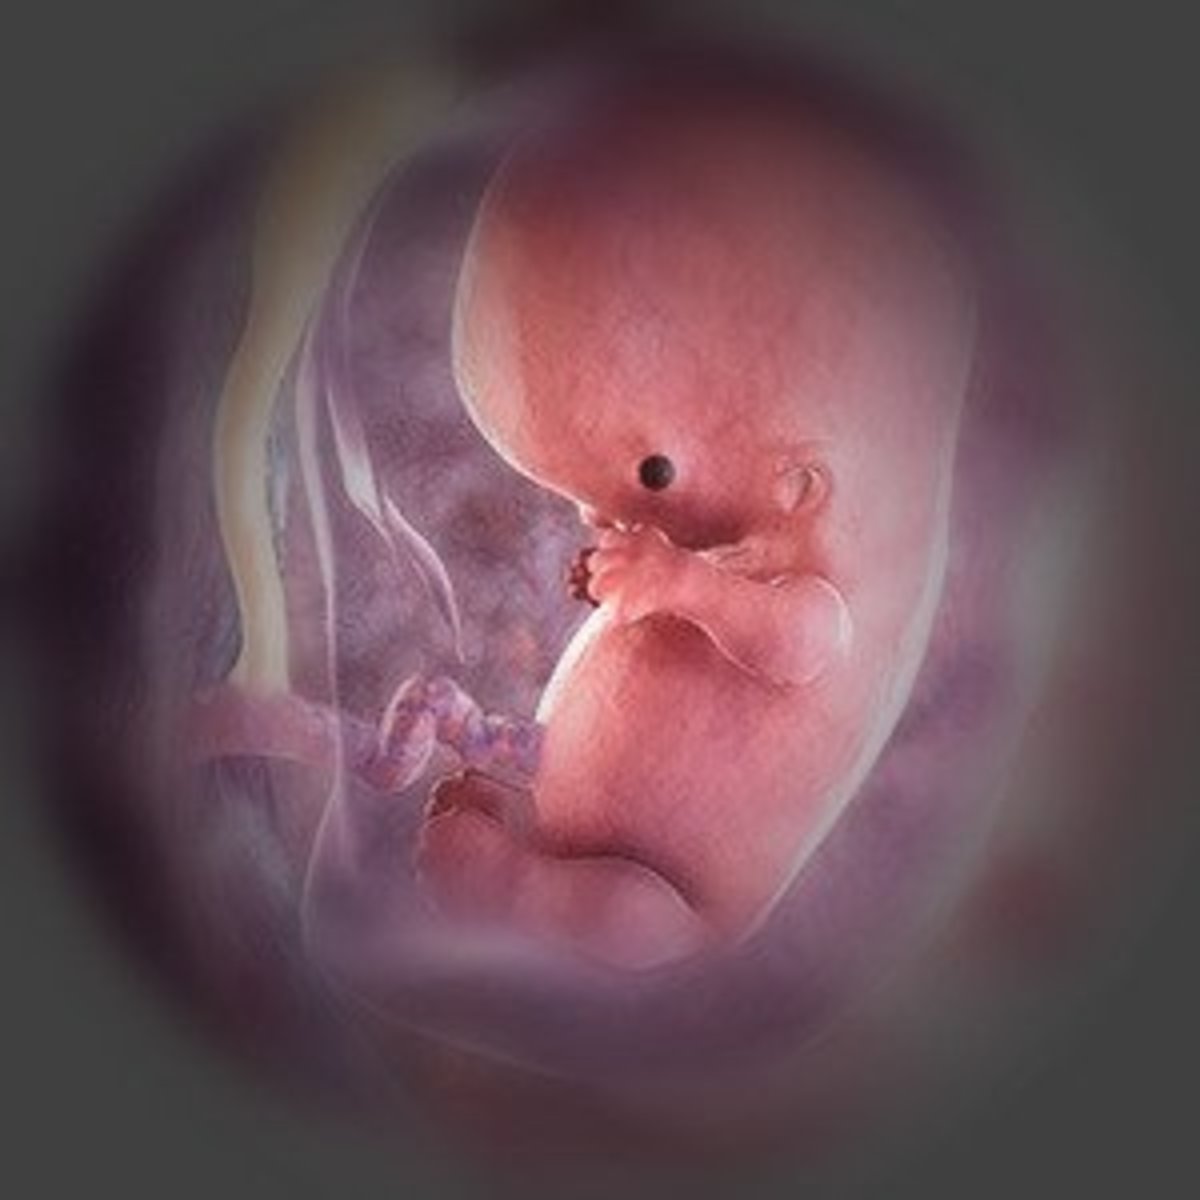 Fetus at 9th week